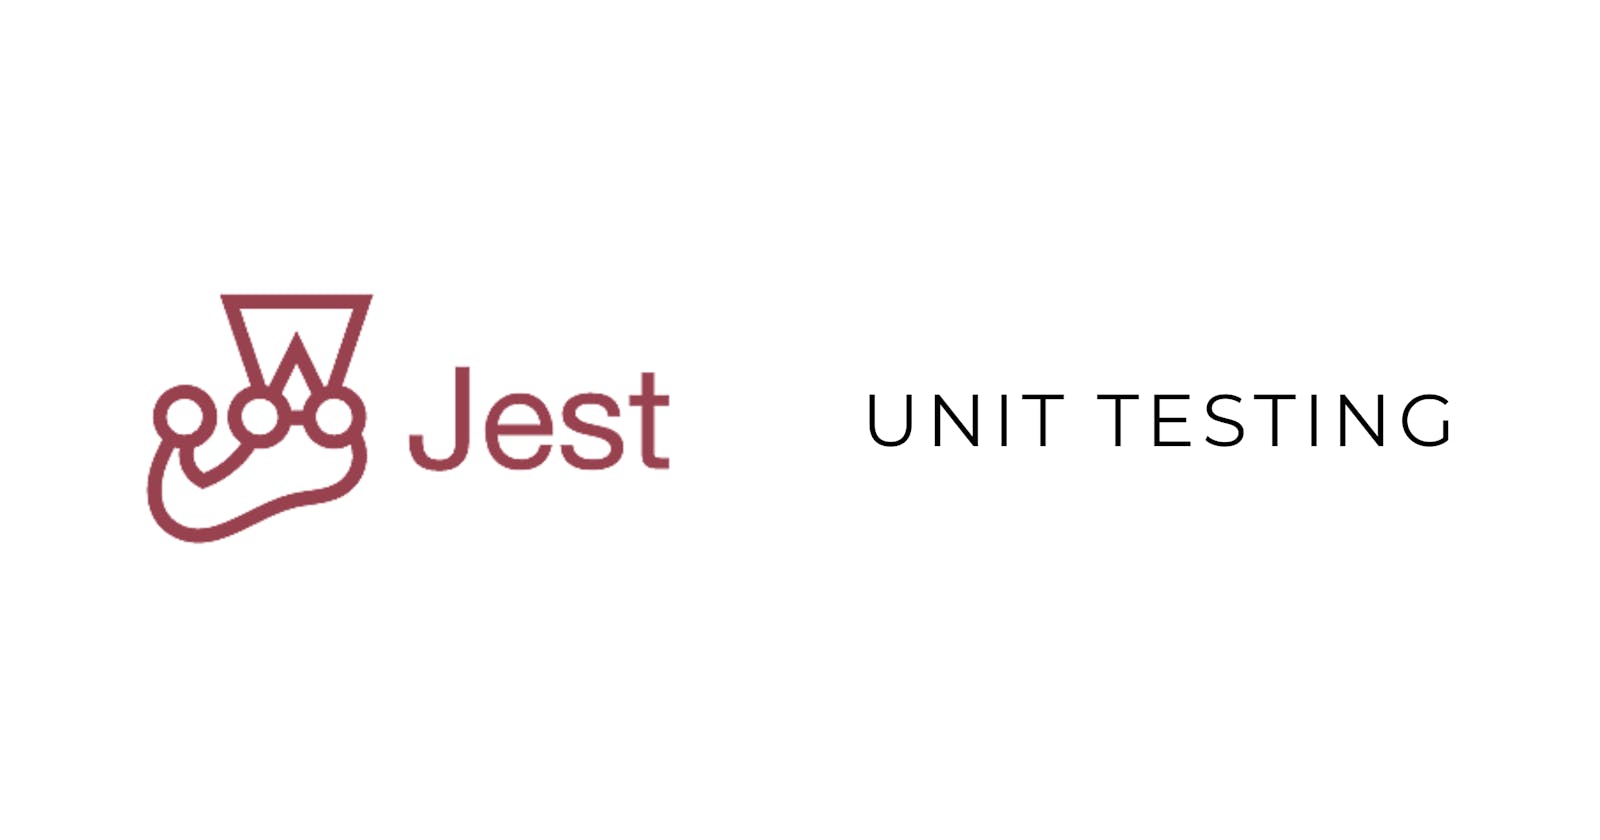 Unit testing with Jest